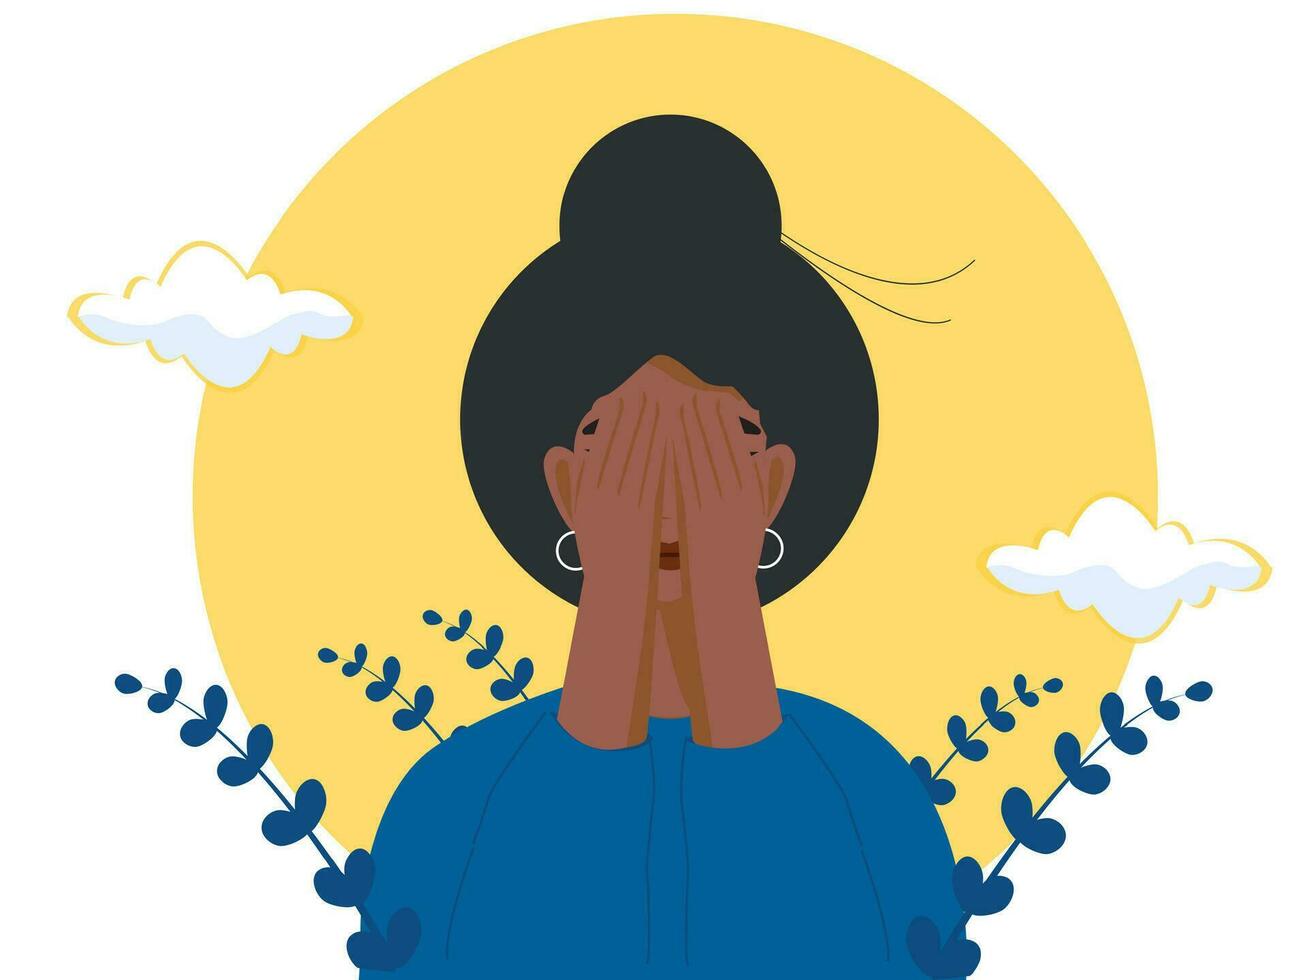 depressief zwart vrouw covers haar gezicht met handen, concept van mentaal aandoeningen, rouw en depressie, fysiek en emotioneel geweld tegen Dames, vector illustratie